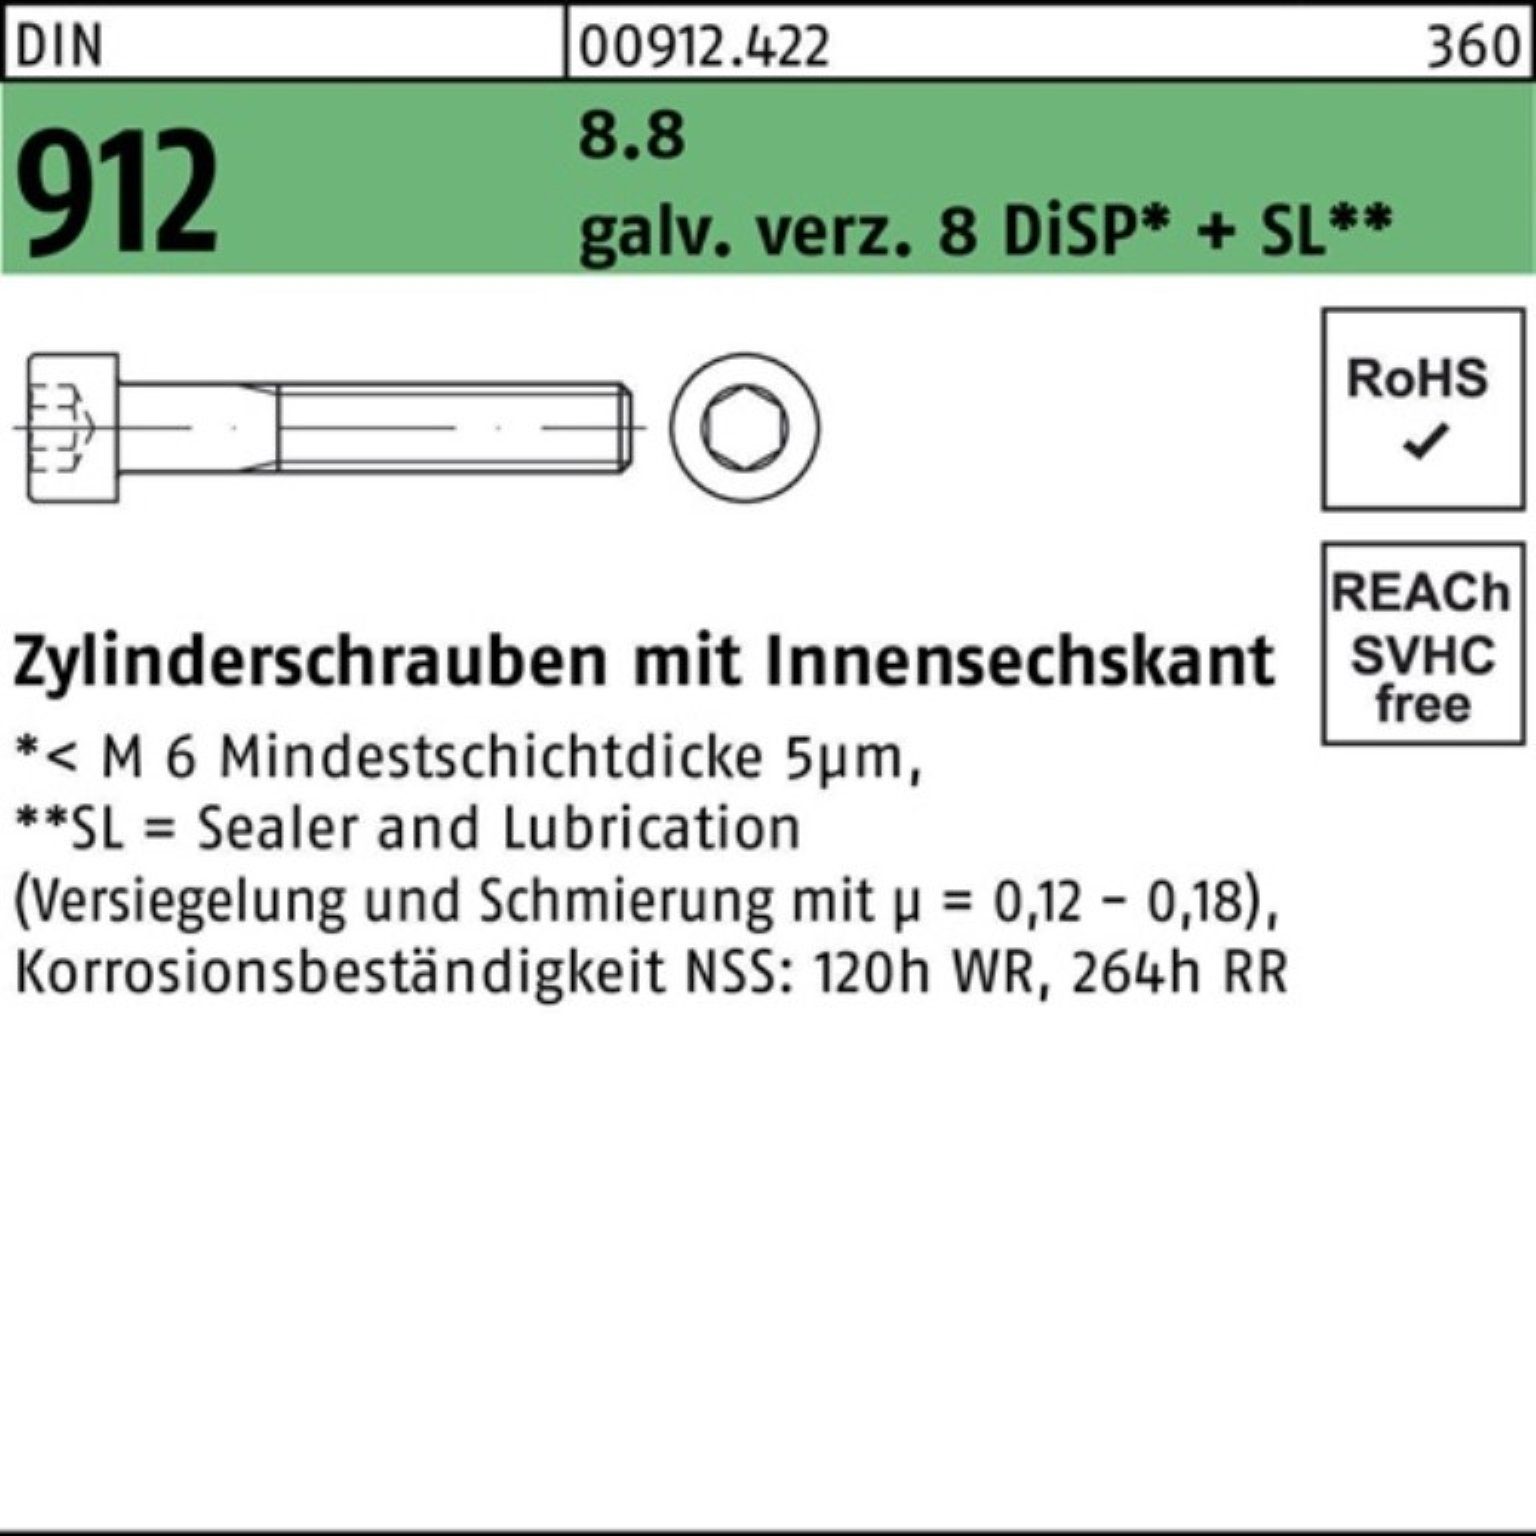 DIN 500er DiSP Pack Zylinderschraube M5x gal + Zn Innen-6kt Zylinderschraube 912 16 Reyher 8.8